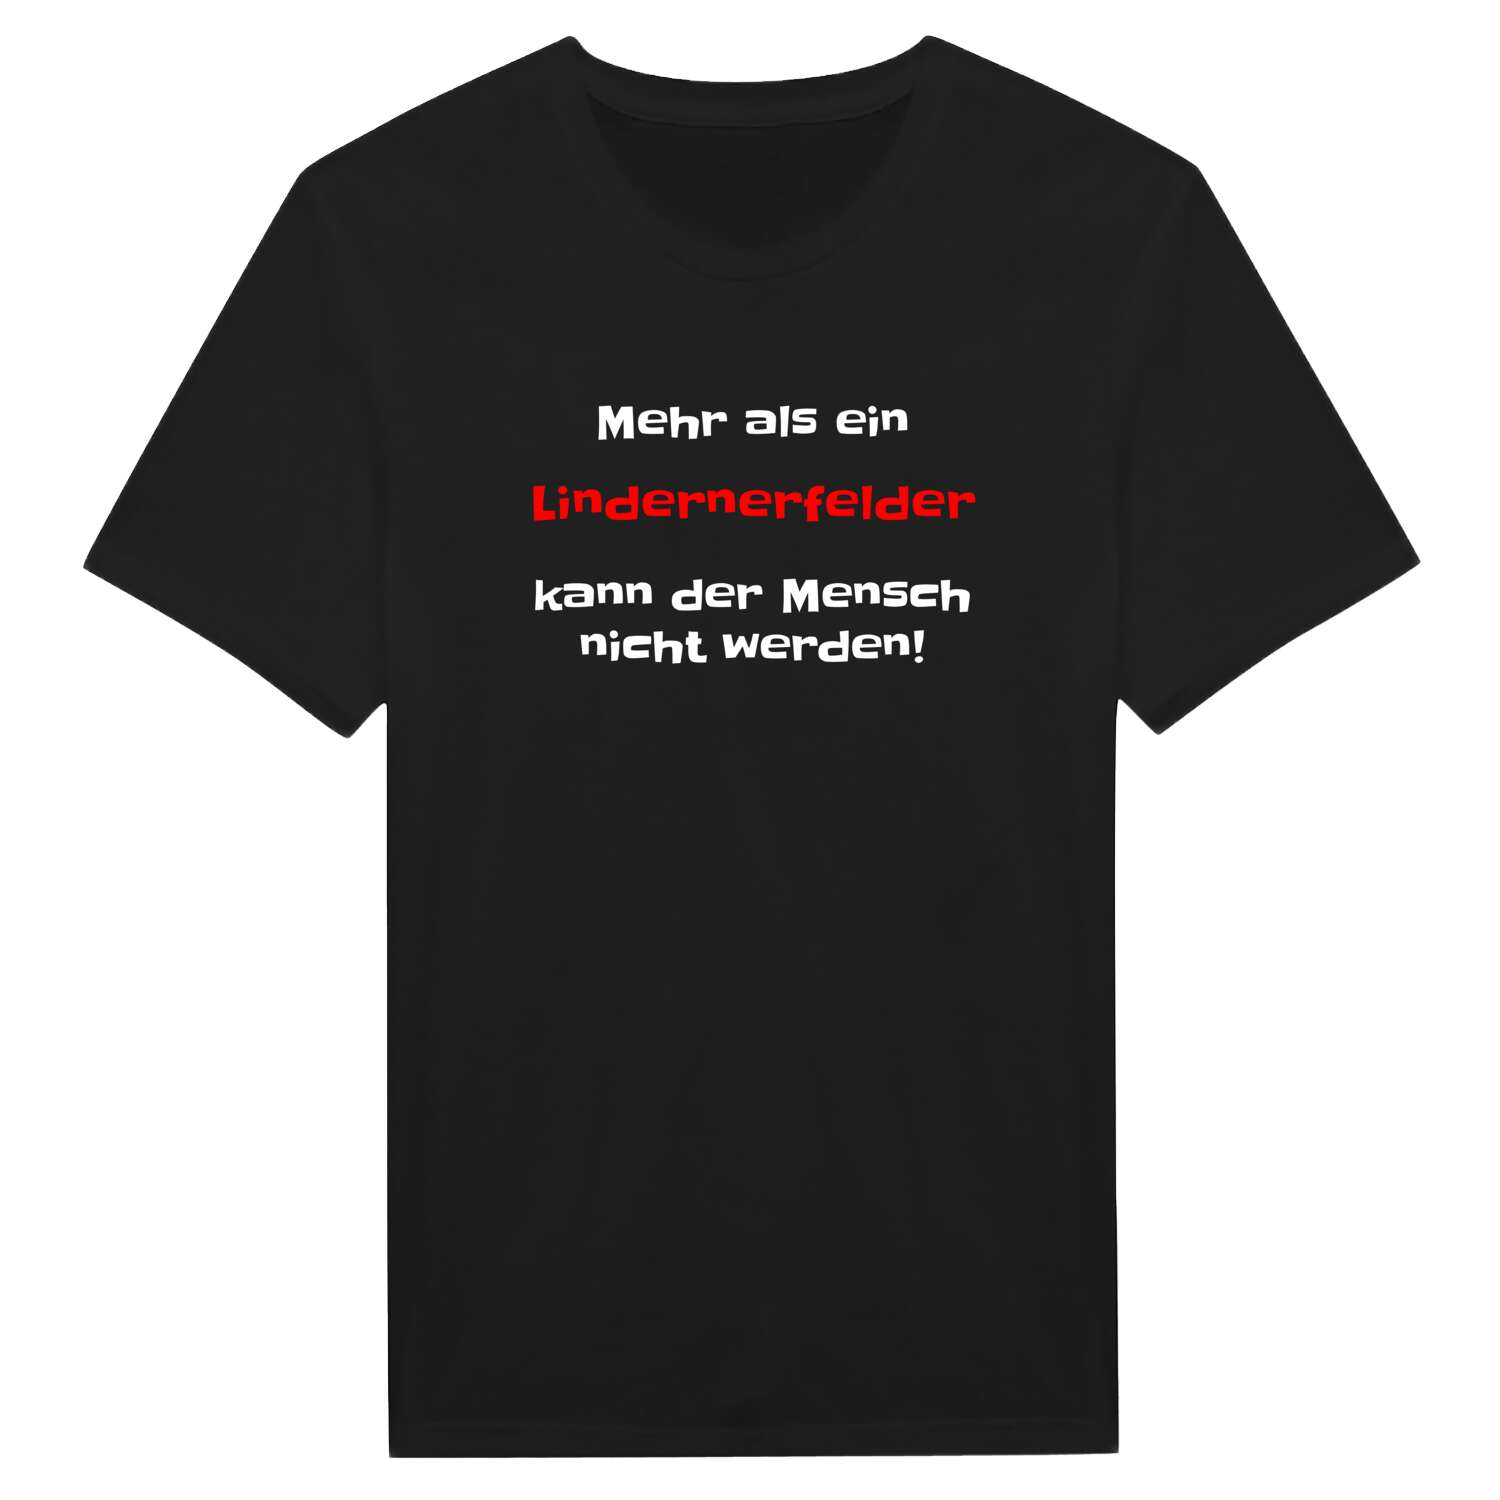 Lindernerfeld T-Shirt »Mehr als ein«